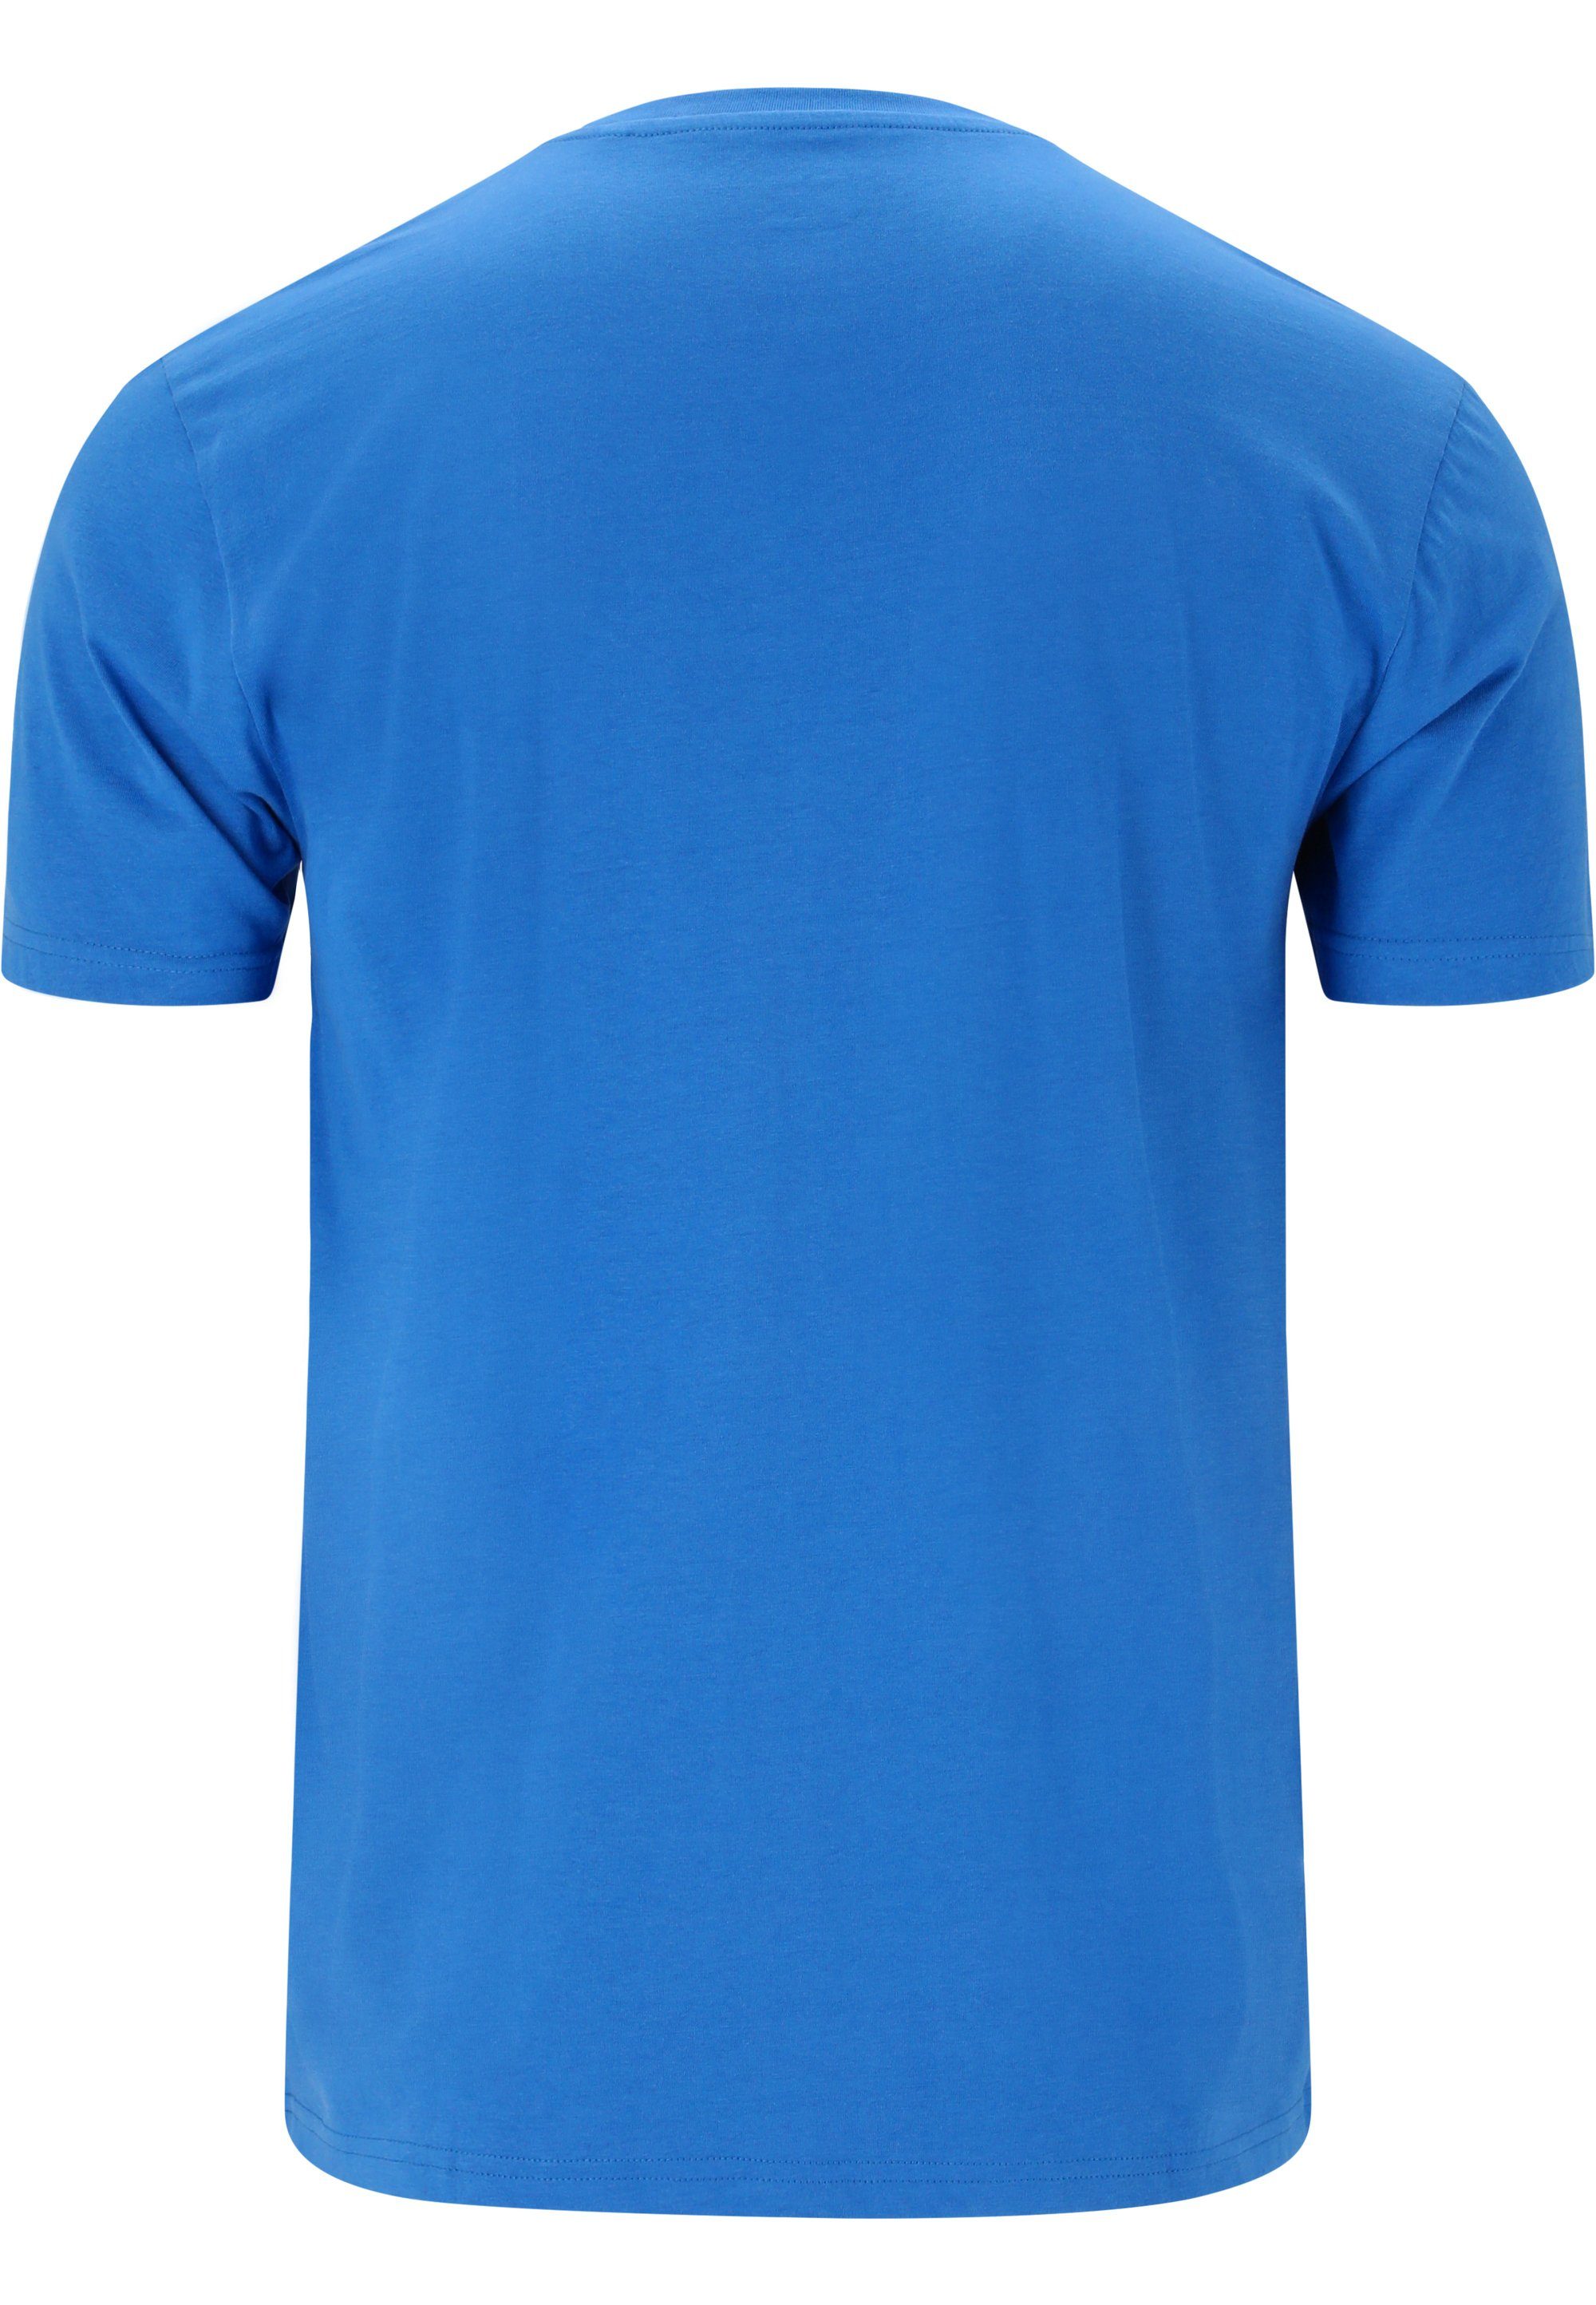 CRUZ T-Shirt Beachlife im Qualität atmungsaktiver mit sommerlichen blau Design